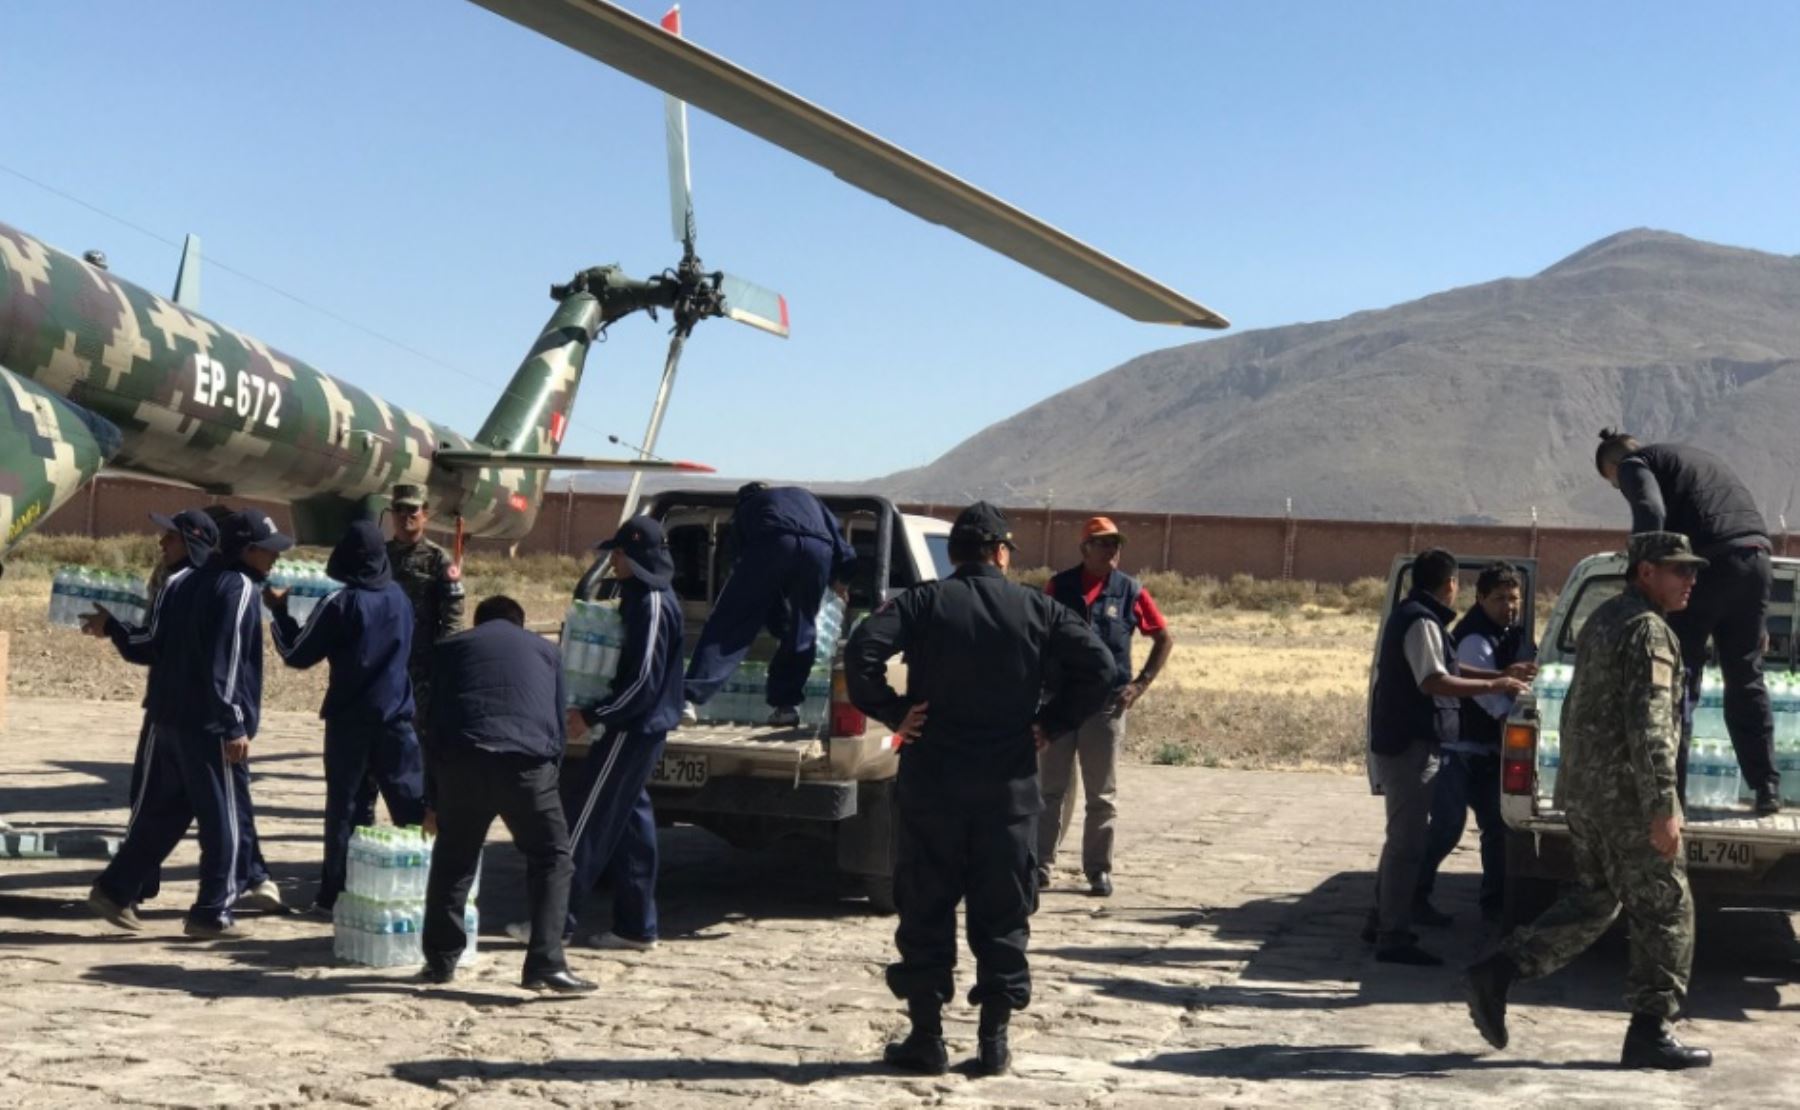 Helicóptero del Ejército traslada ayuda humanitaria a pasajeros y conductores varados en la Panamericana Sur por desprendimientos de rocas y tierras tras el fuerte sismo ocurrido anoche.